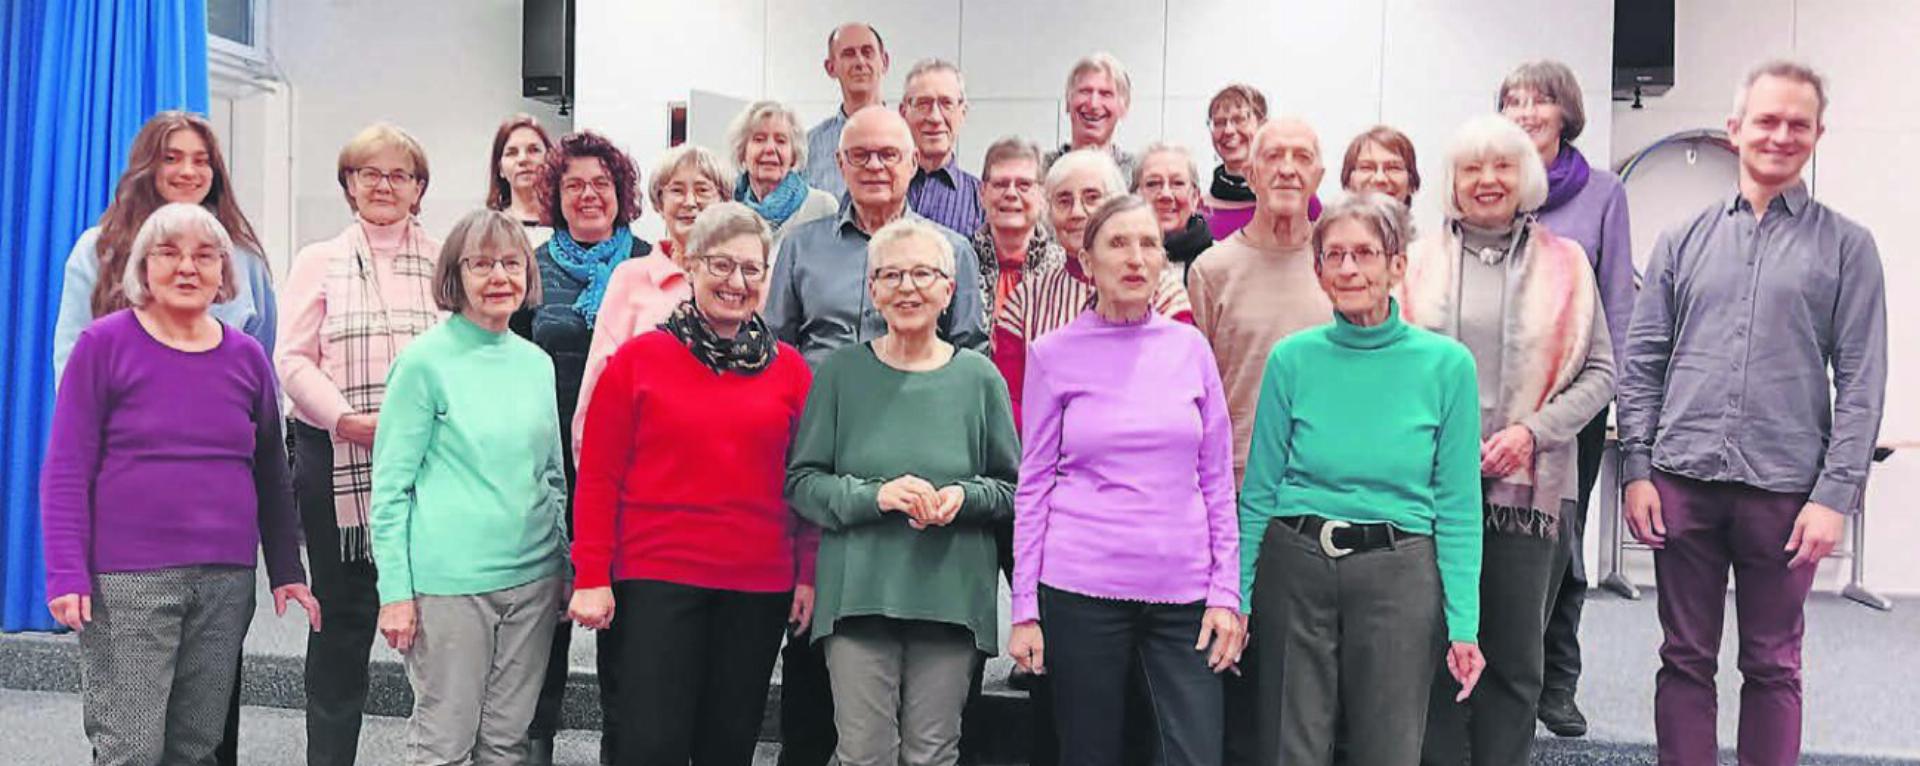 Der Gemischte Chor Rudolfstetten-Friedlisberg freut sich auf das Neujahrskonzert. Bild: zg